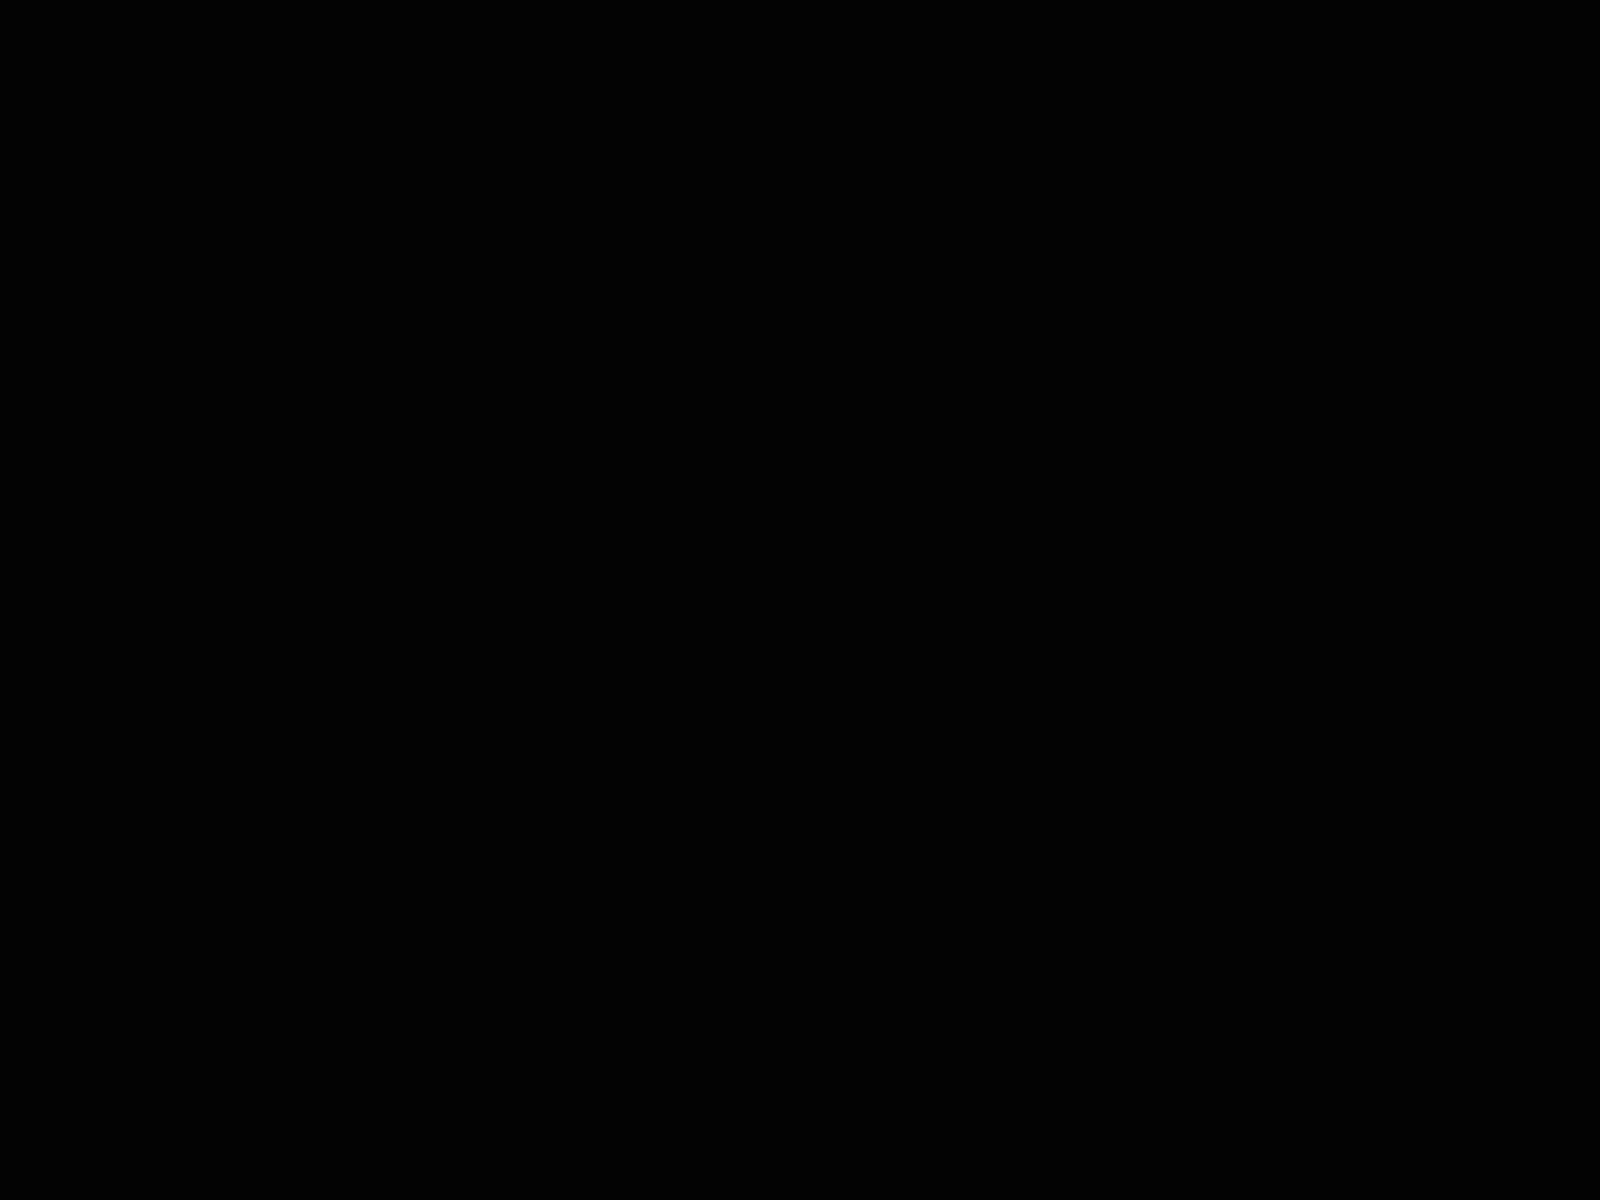 Pfizer animated logo